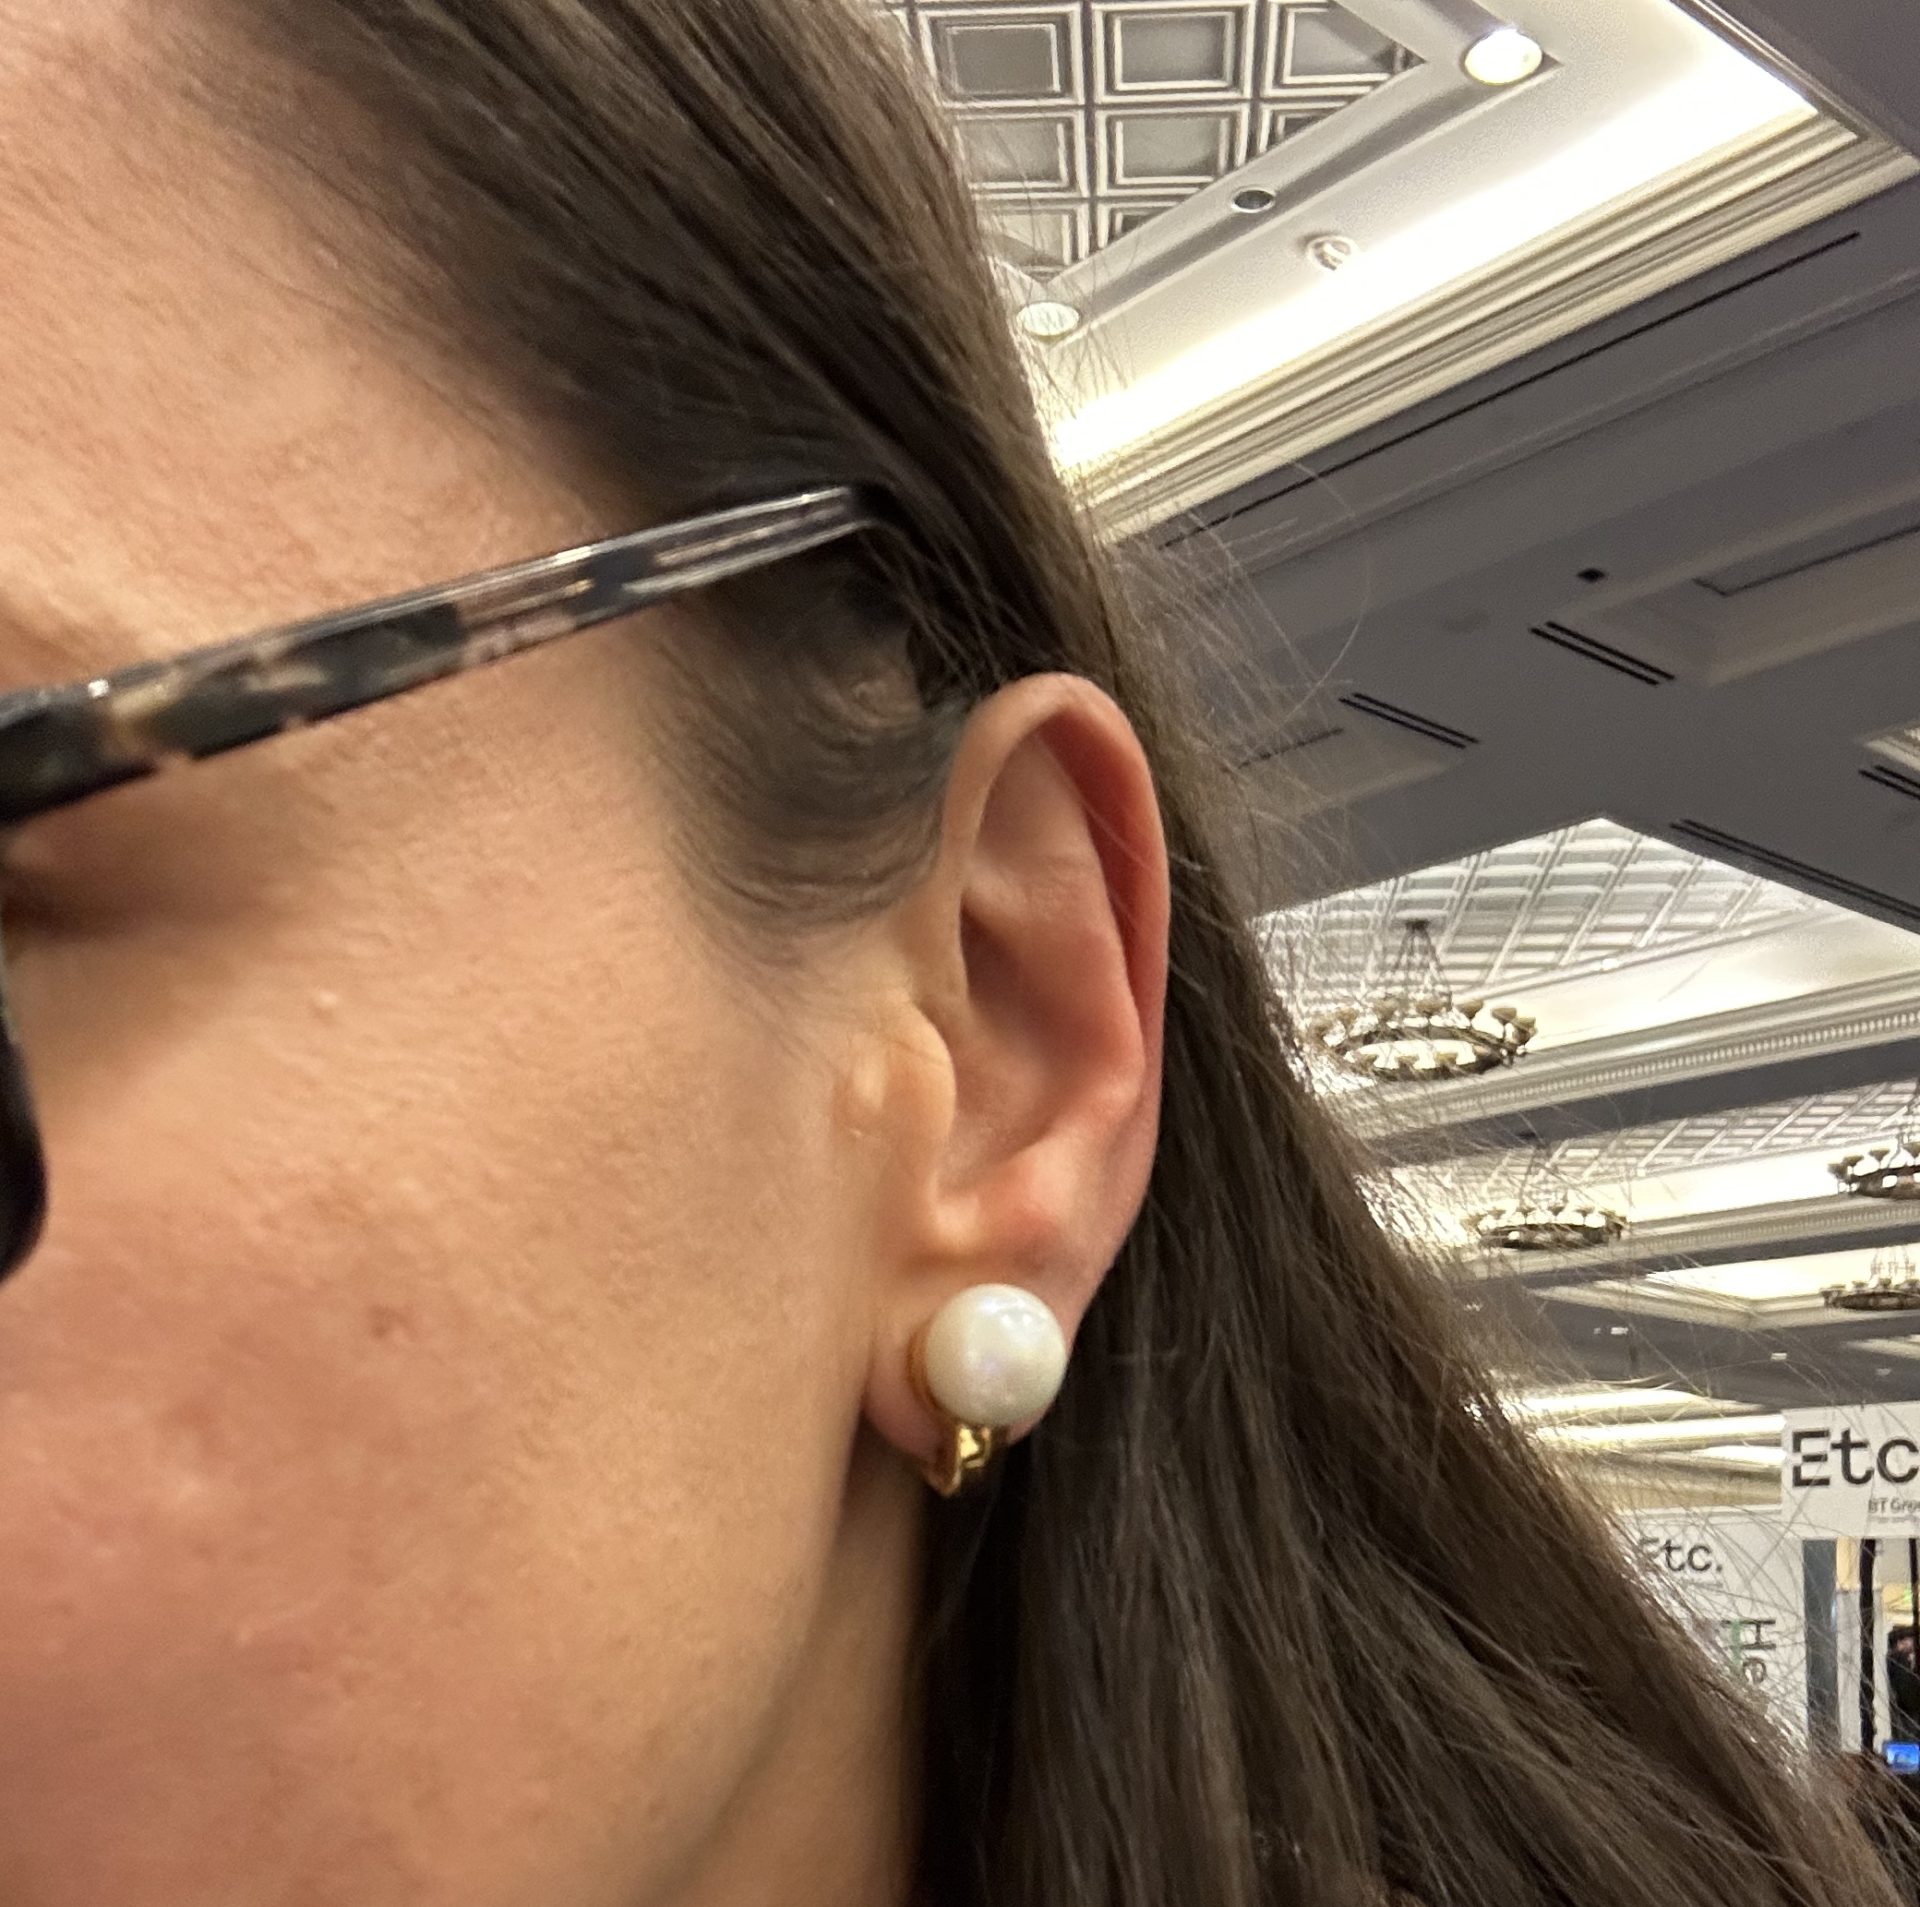 Nova H1 earrings